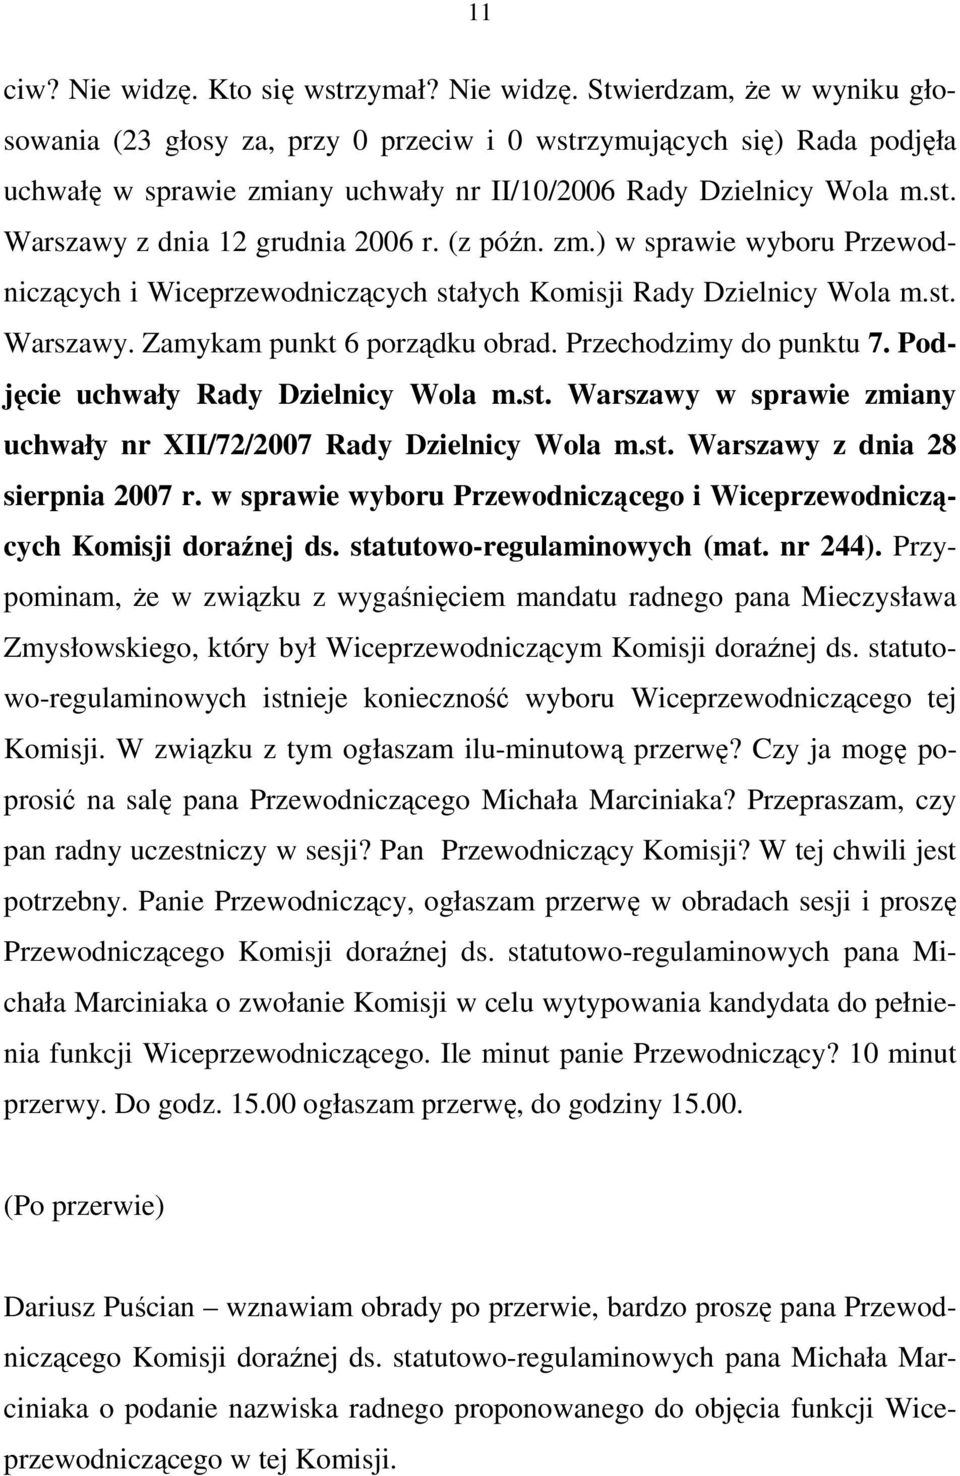 Przechodzimy do punktu 7. Podjęcie uchwały Rady Dzielnicy Wola m.st. Warszawy w sprawie zmiany uchwały nr XII/72/2007 Rady Dzielnicy Wola m.st. Warszawy z dnia 28 sierpnia 2007 r.